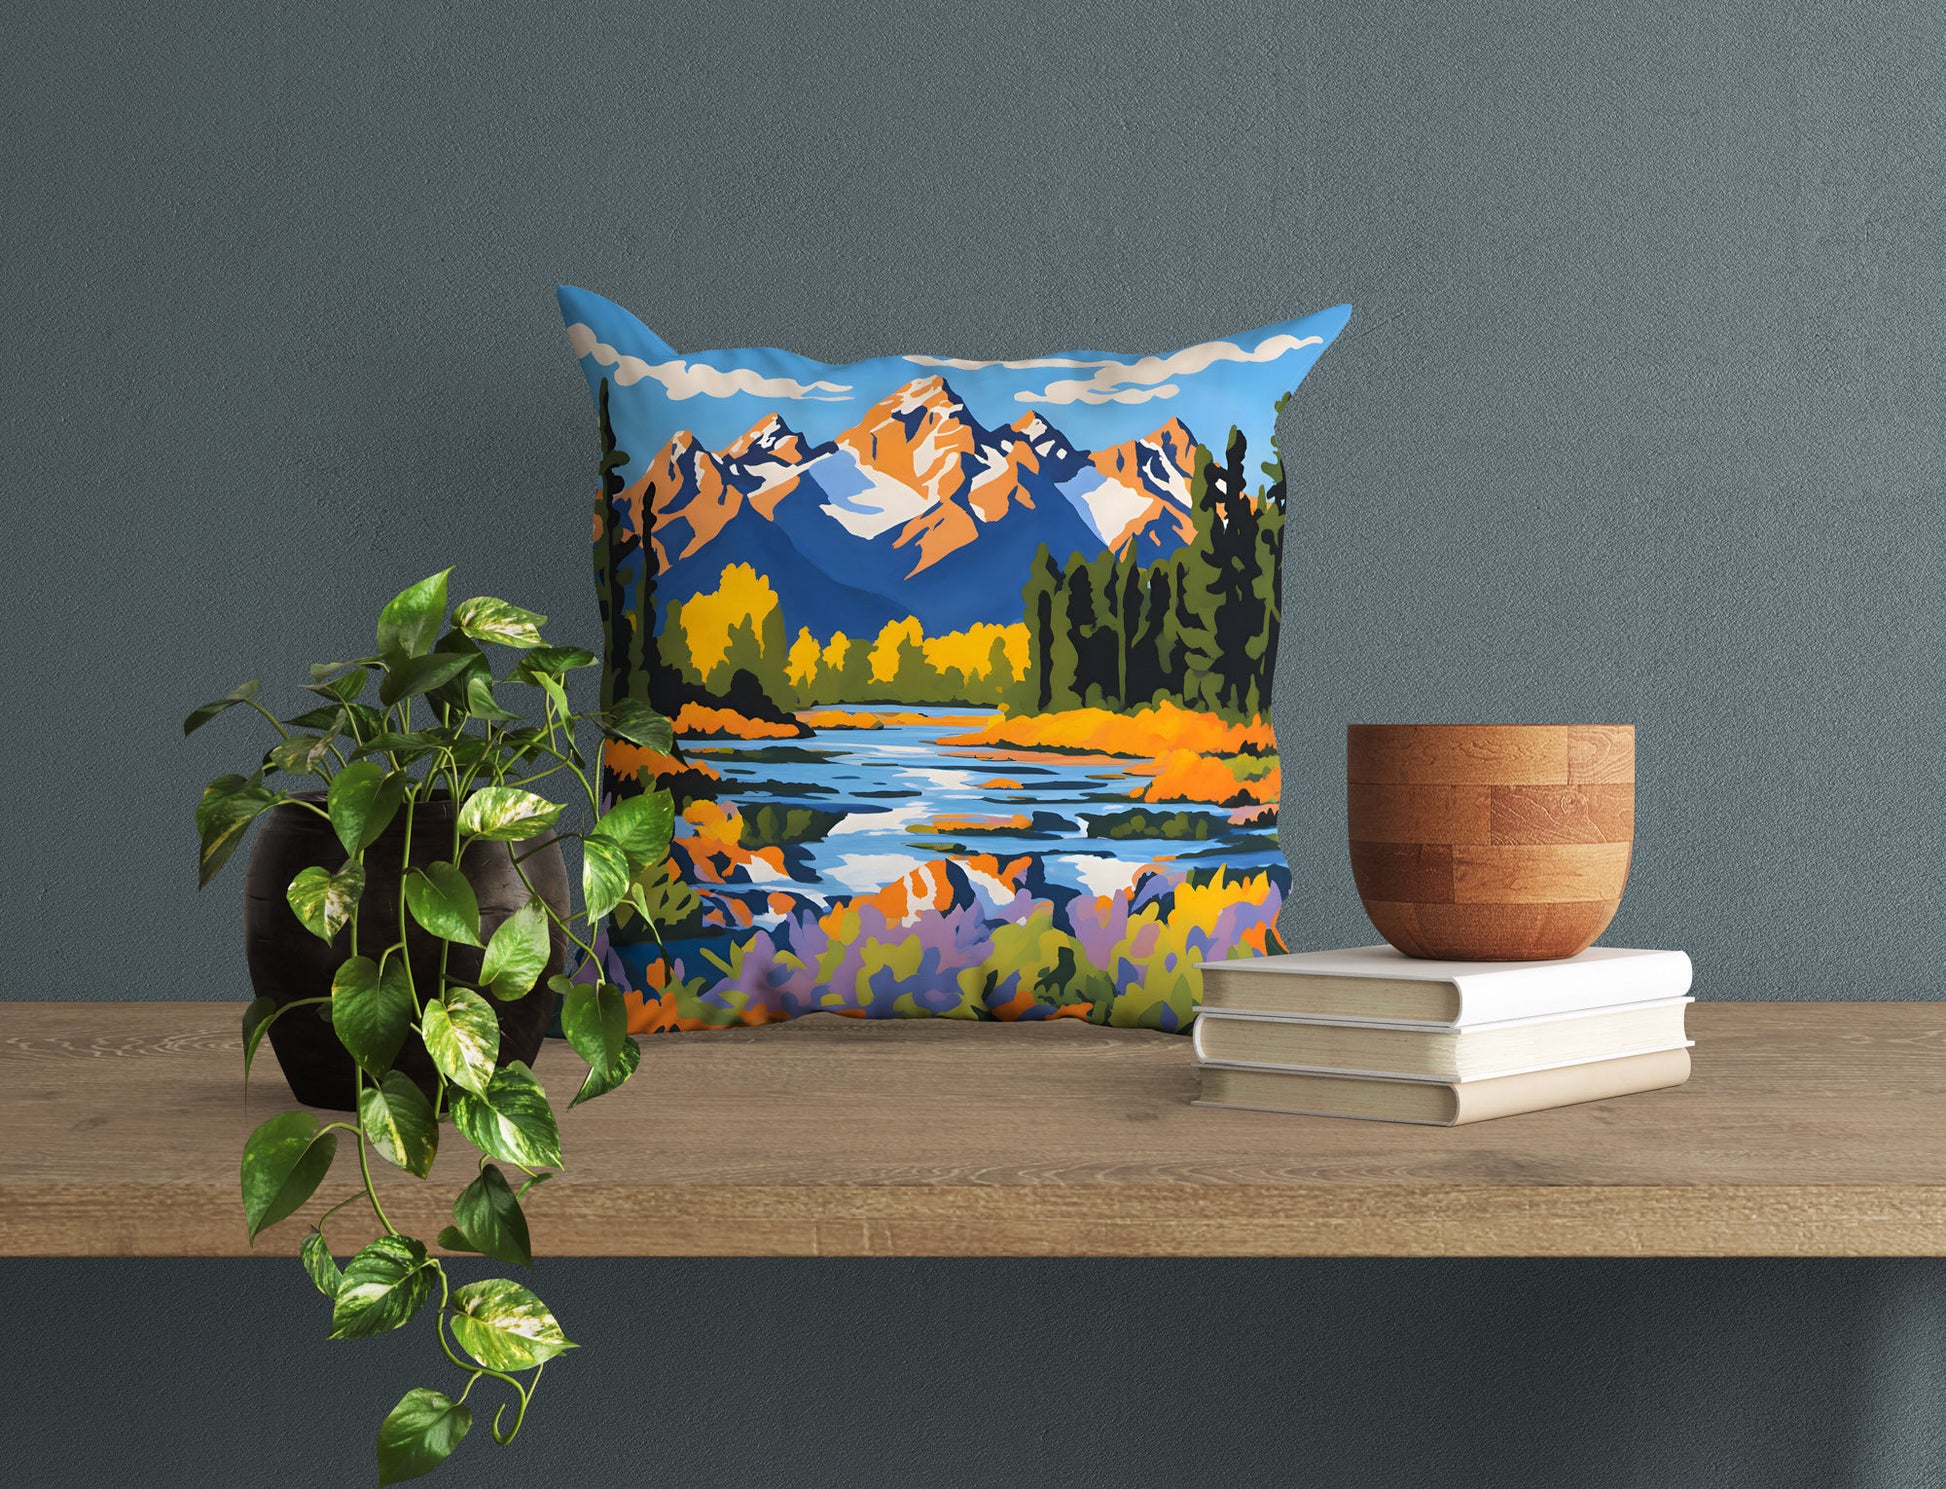 Grand Teton National Park, Wyoming Toss Pillow, Usa Travel Pillow, Art Pillow, Beautiful Pillow, 18 X 18 Pillow Covers, Playroom Decor